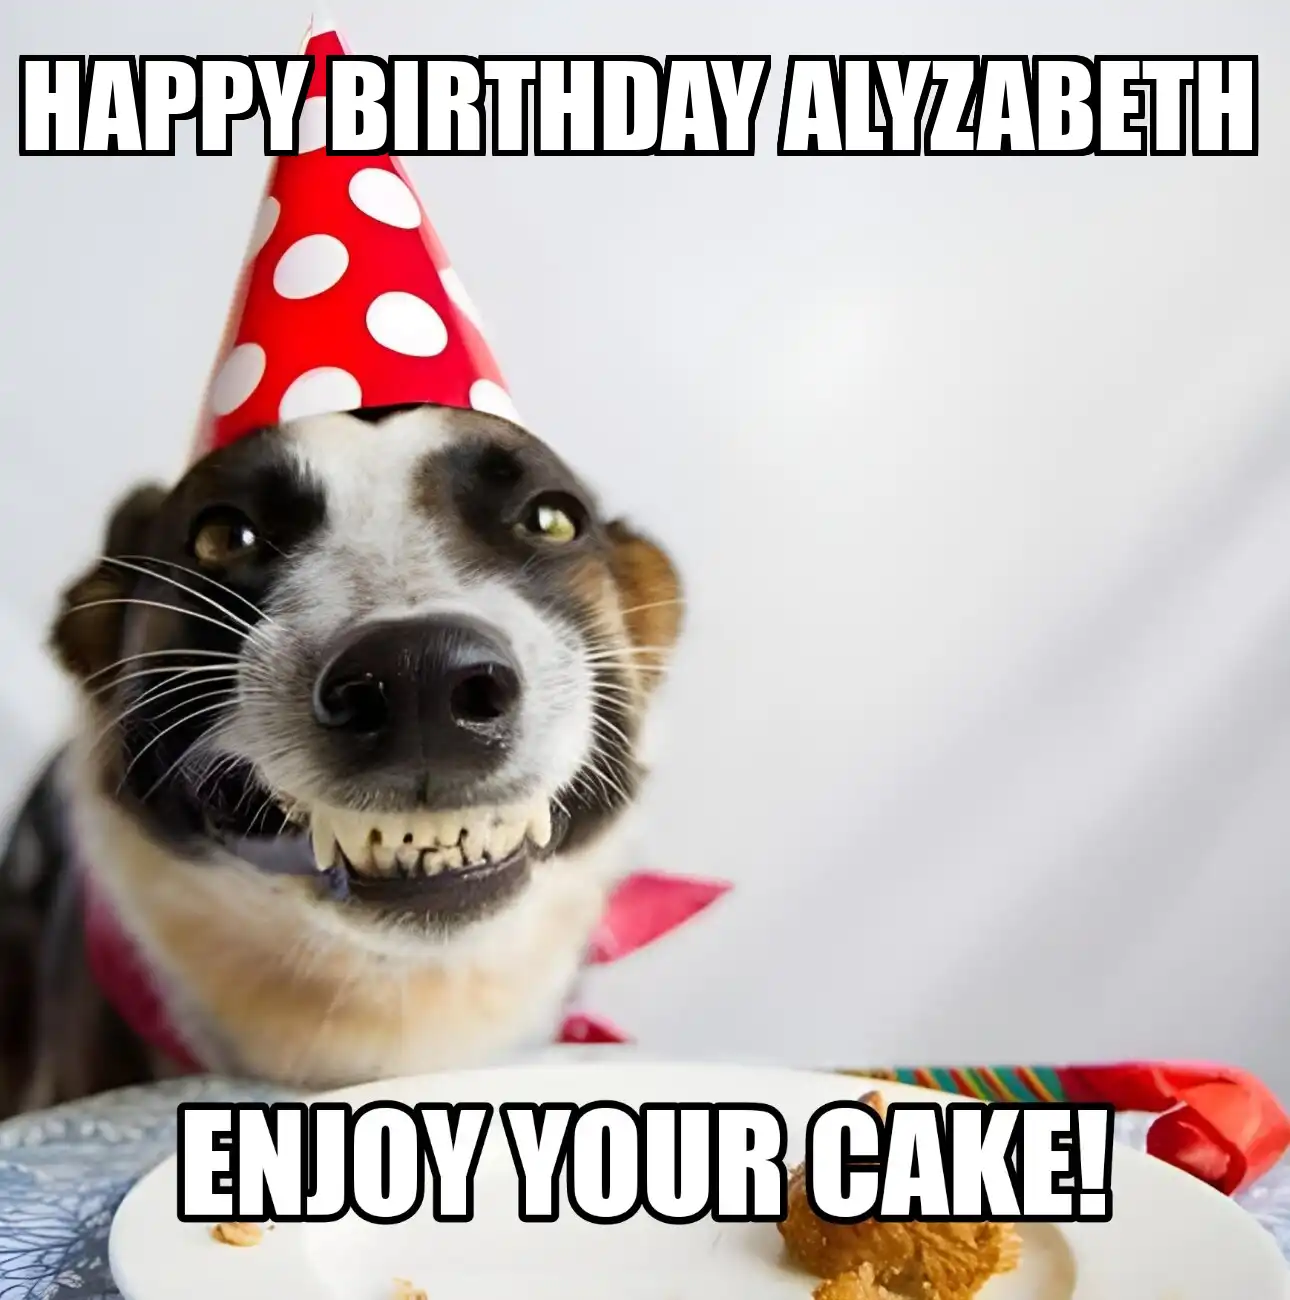 Happy Birthday Alyzabeth Enjoy Your Cake Dog Meme